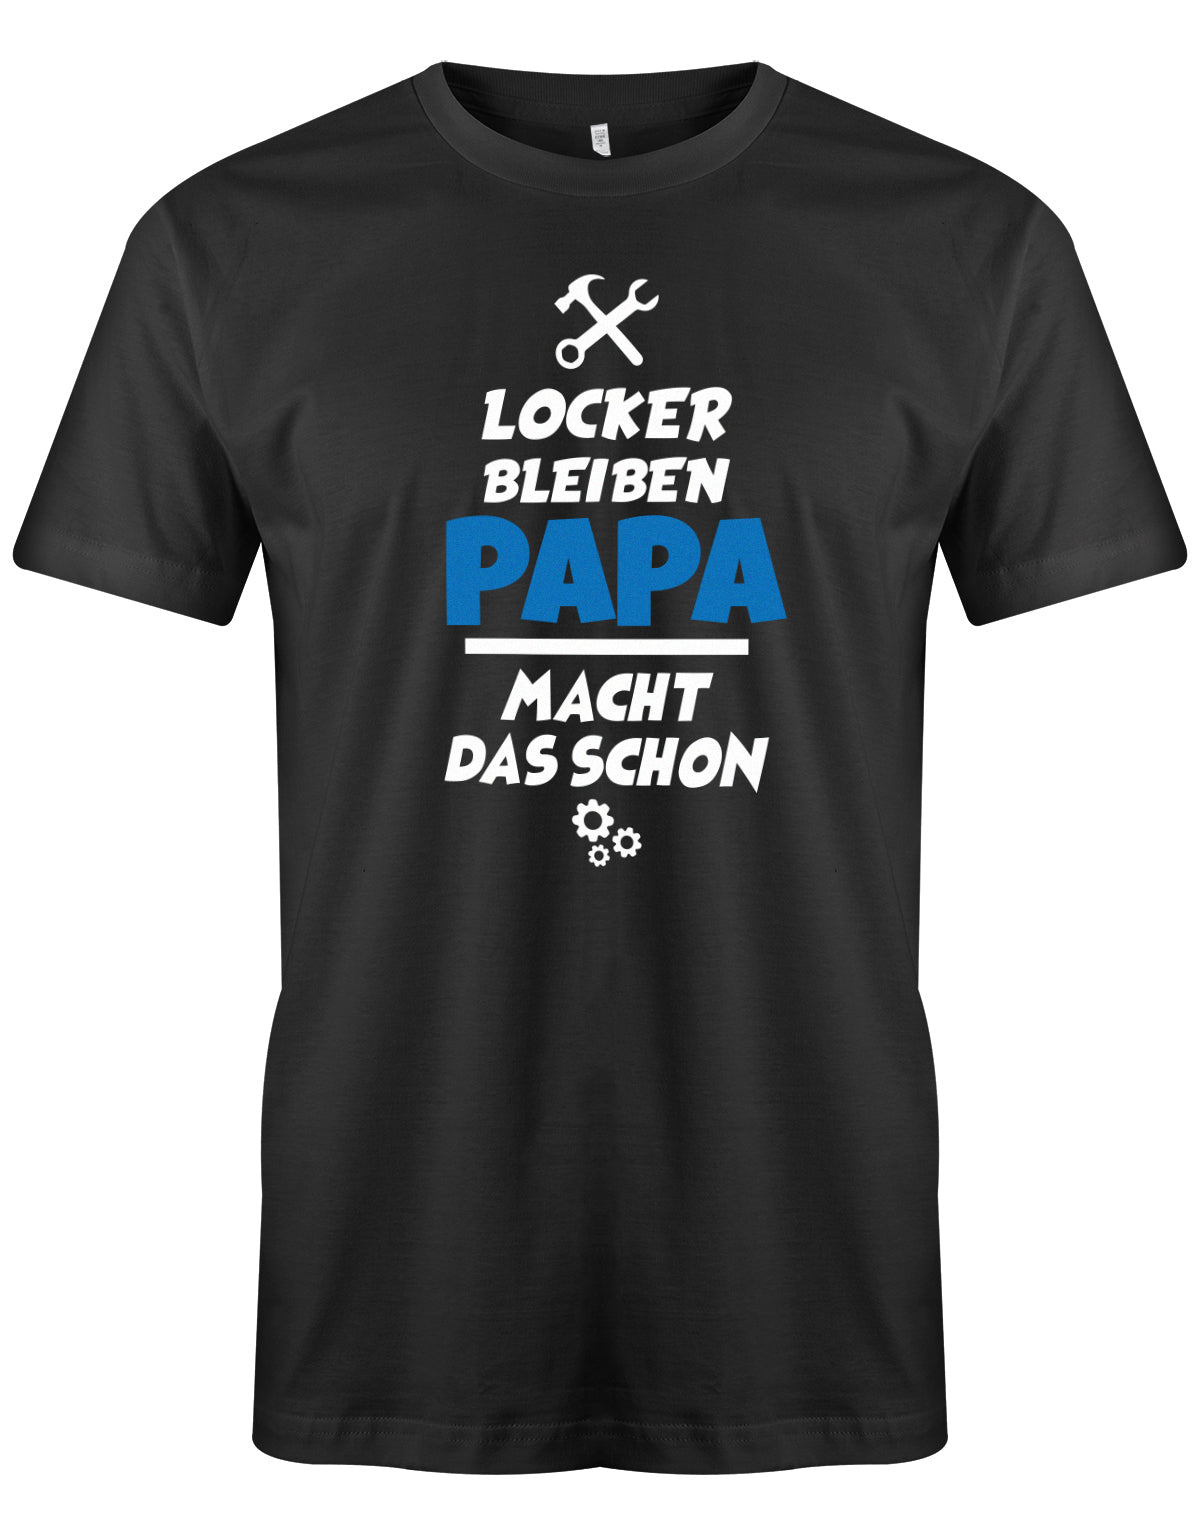 Papa T-Shirt - Locker bleiben Papa macht das schon Schwarz